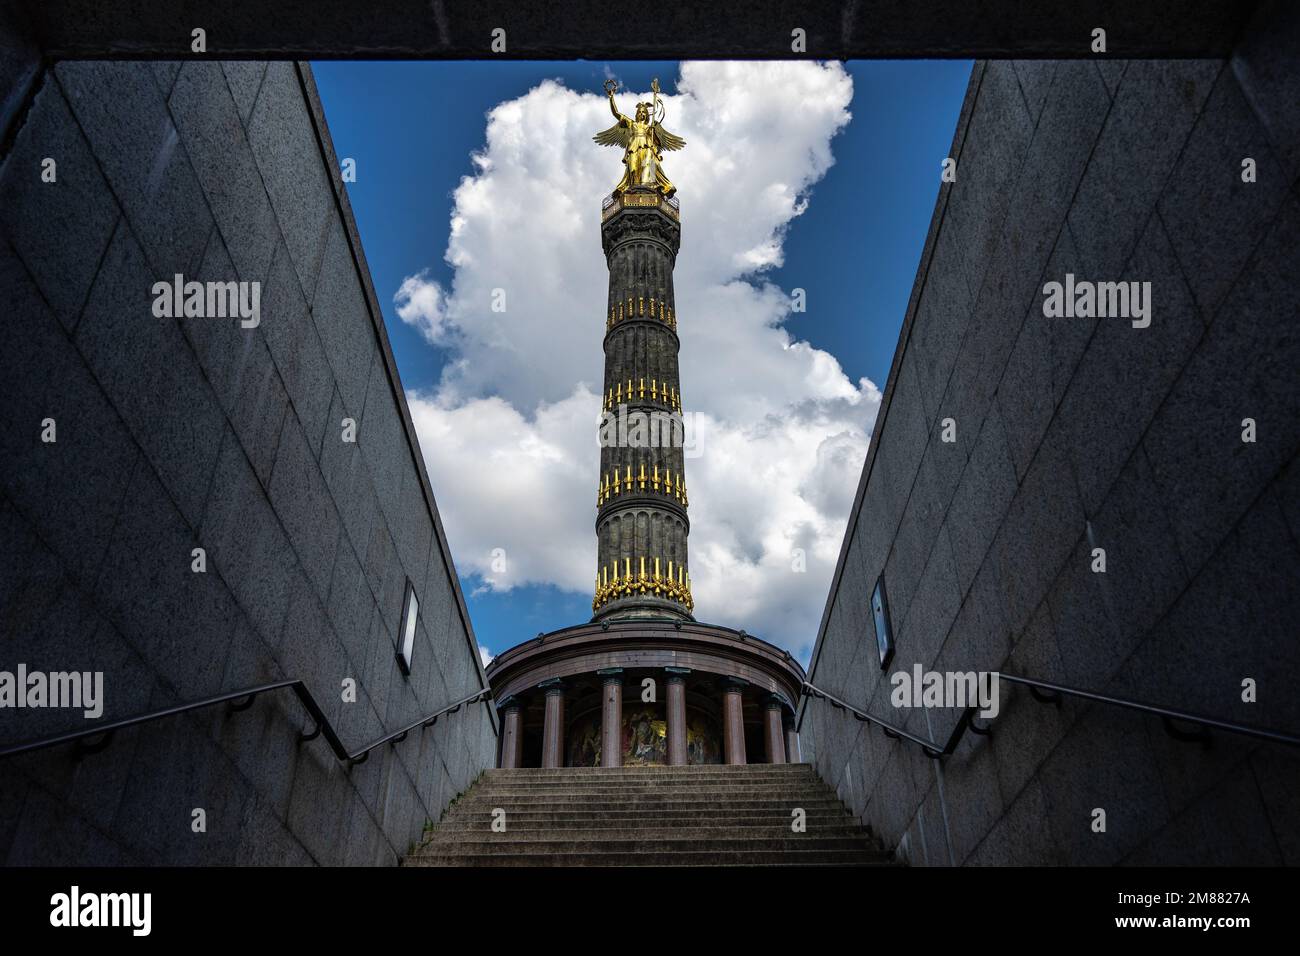 La colonne de la victoire (Siegessäule) de Berlin avec la statue de l'ange d'or - appelée Goldelse - sur le dessus, tiré du sous-sol par temps clair Banque D'Images